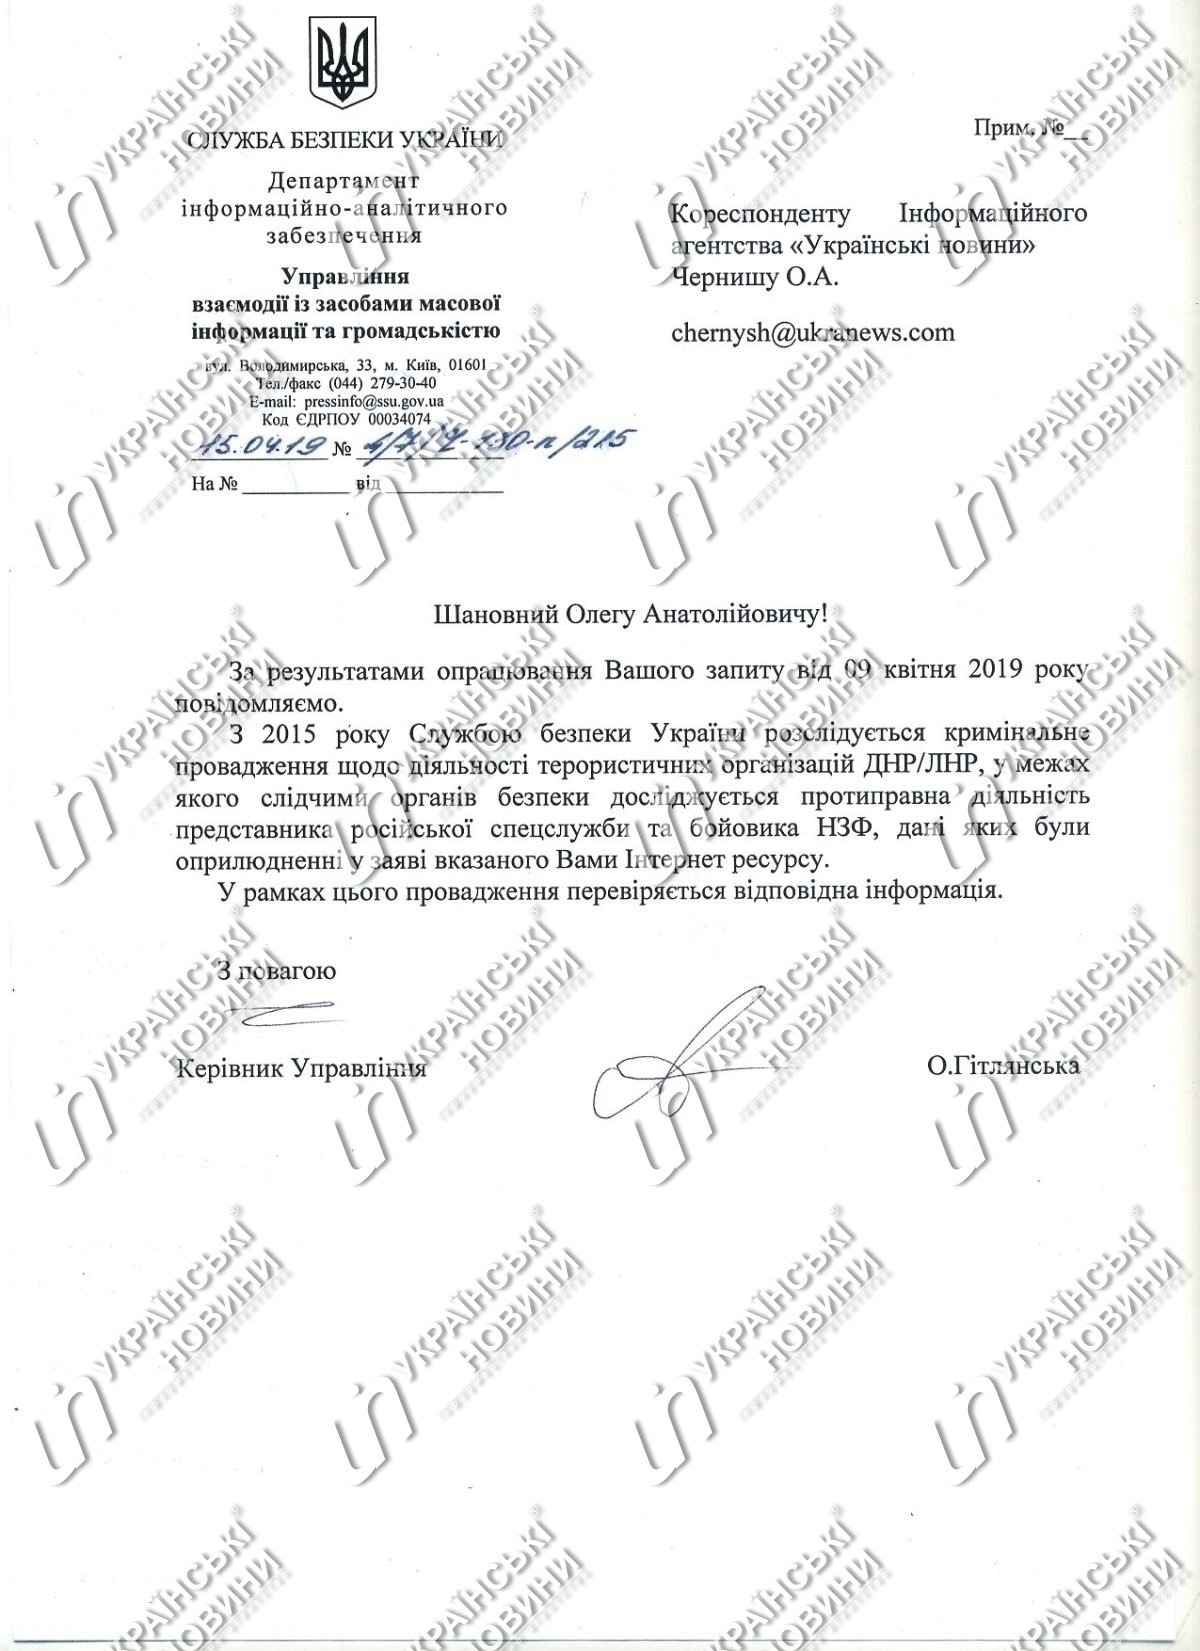 СБУ начала проверку информации о финансировании кампании Зеленского спецслужбами РФ